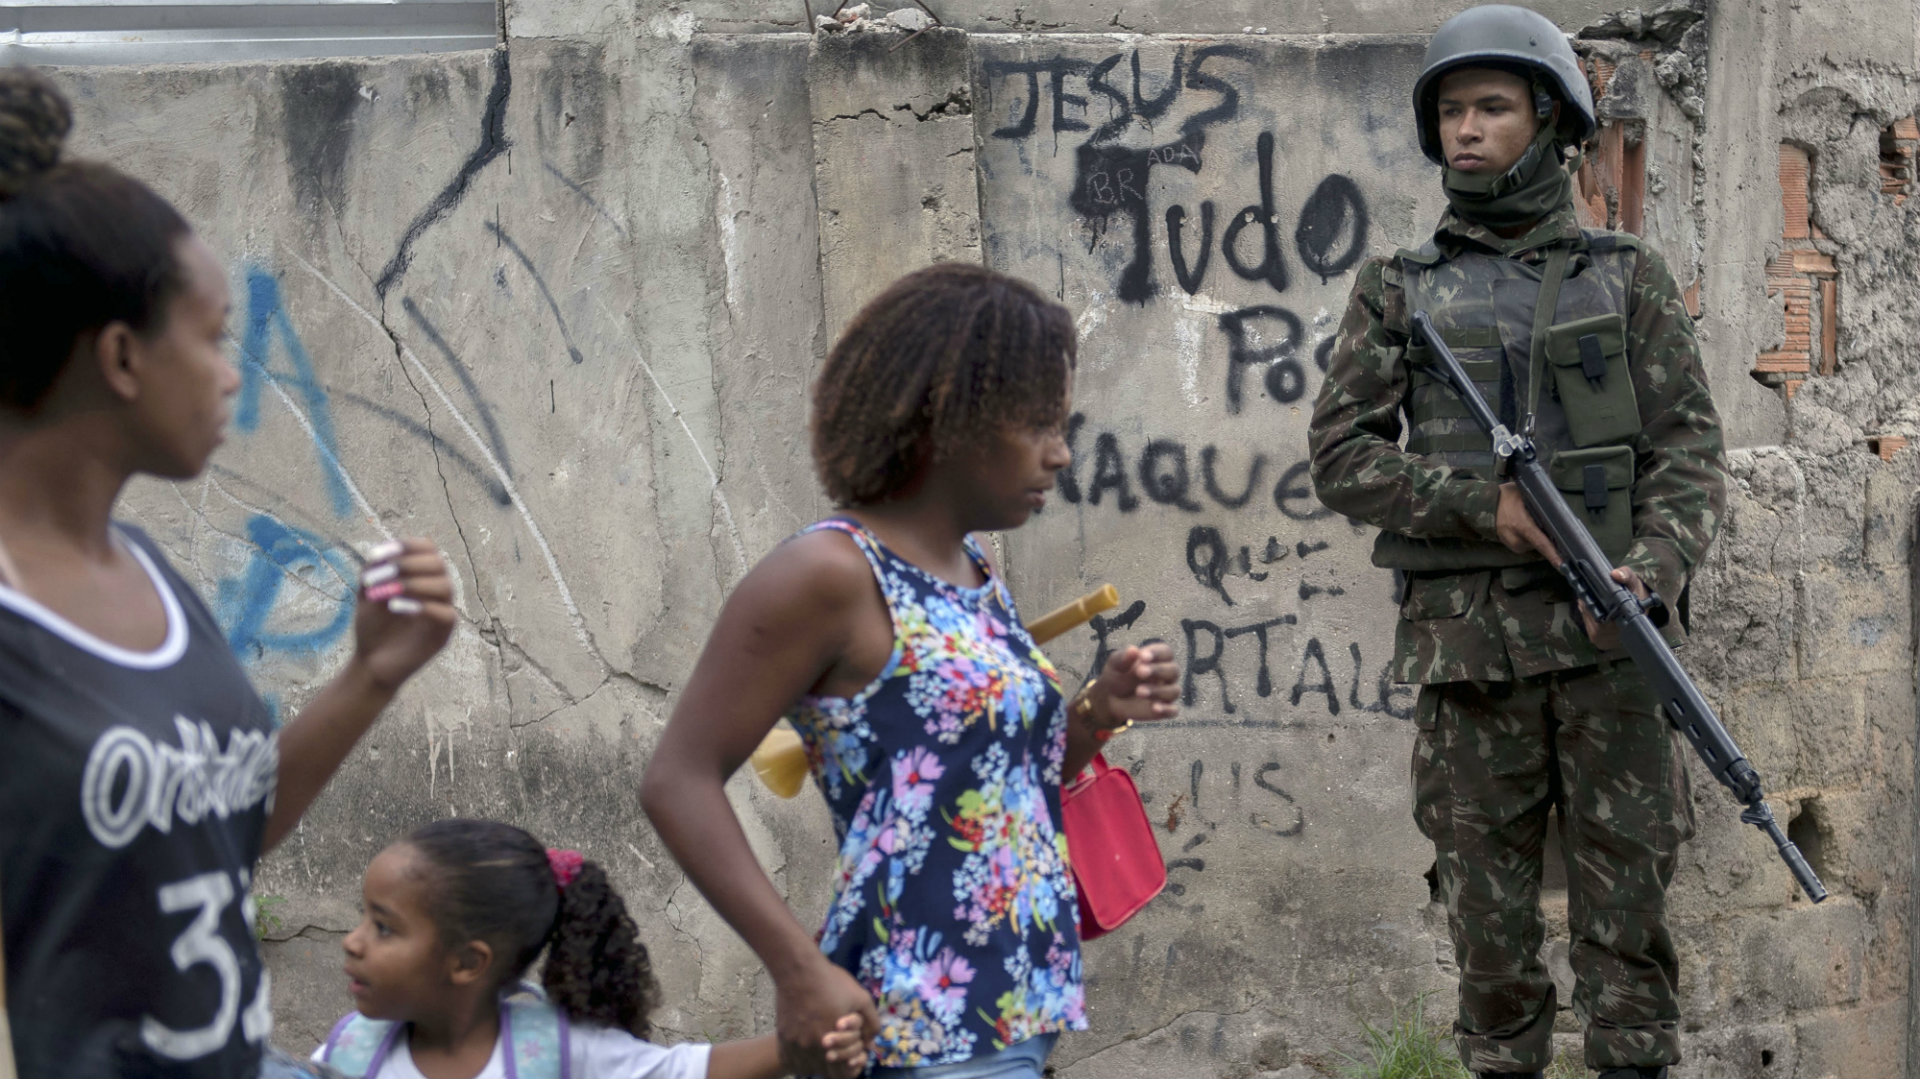 Al menos 20 narcotraficantes presos deja operación militar en Río de Janeiro